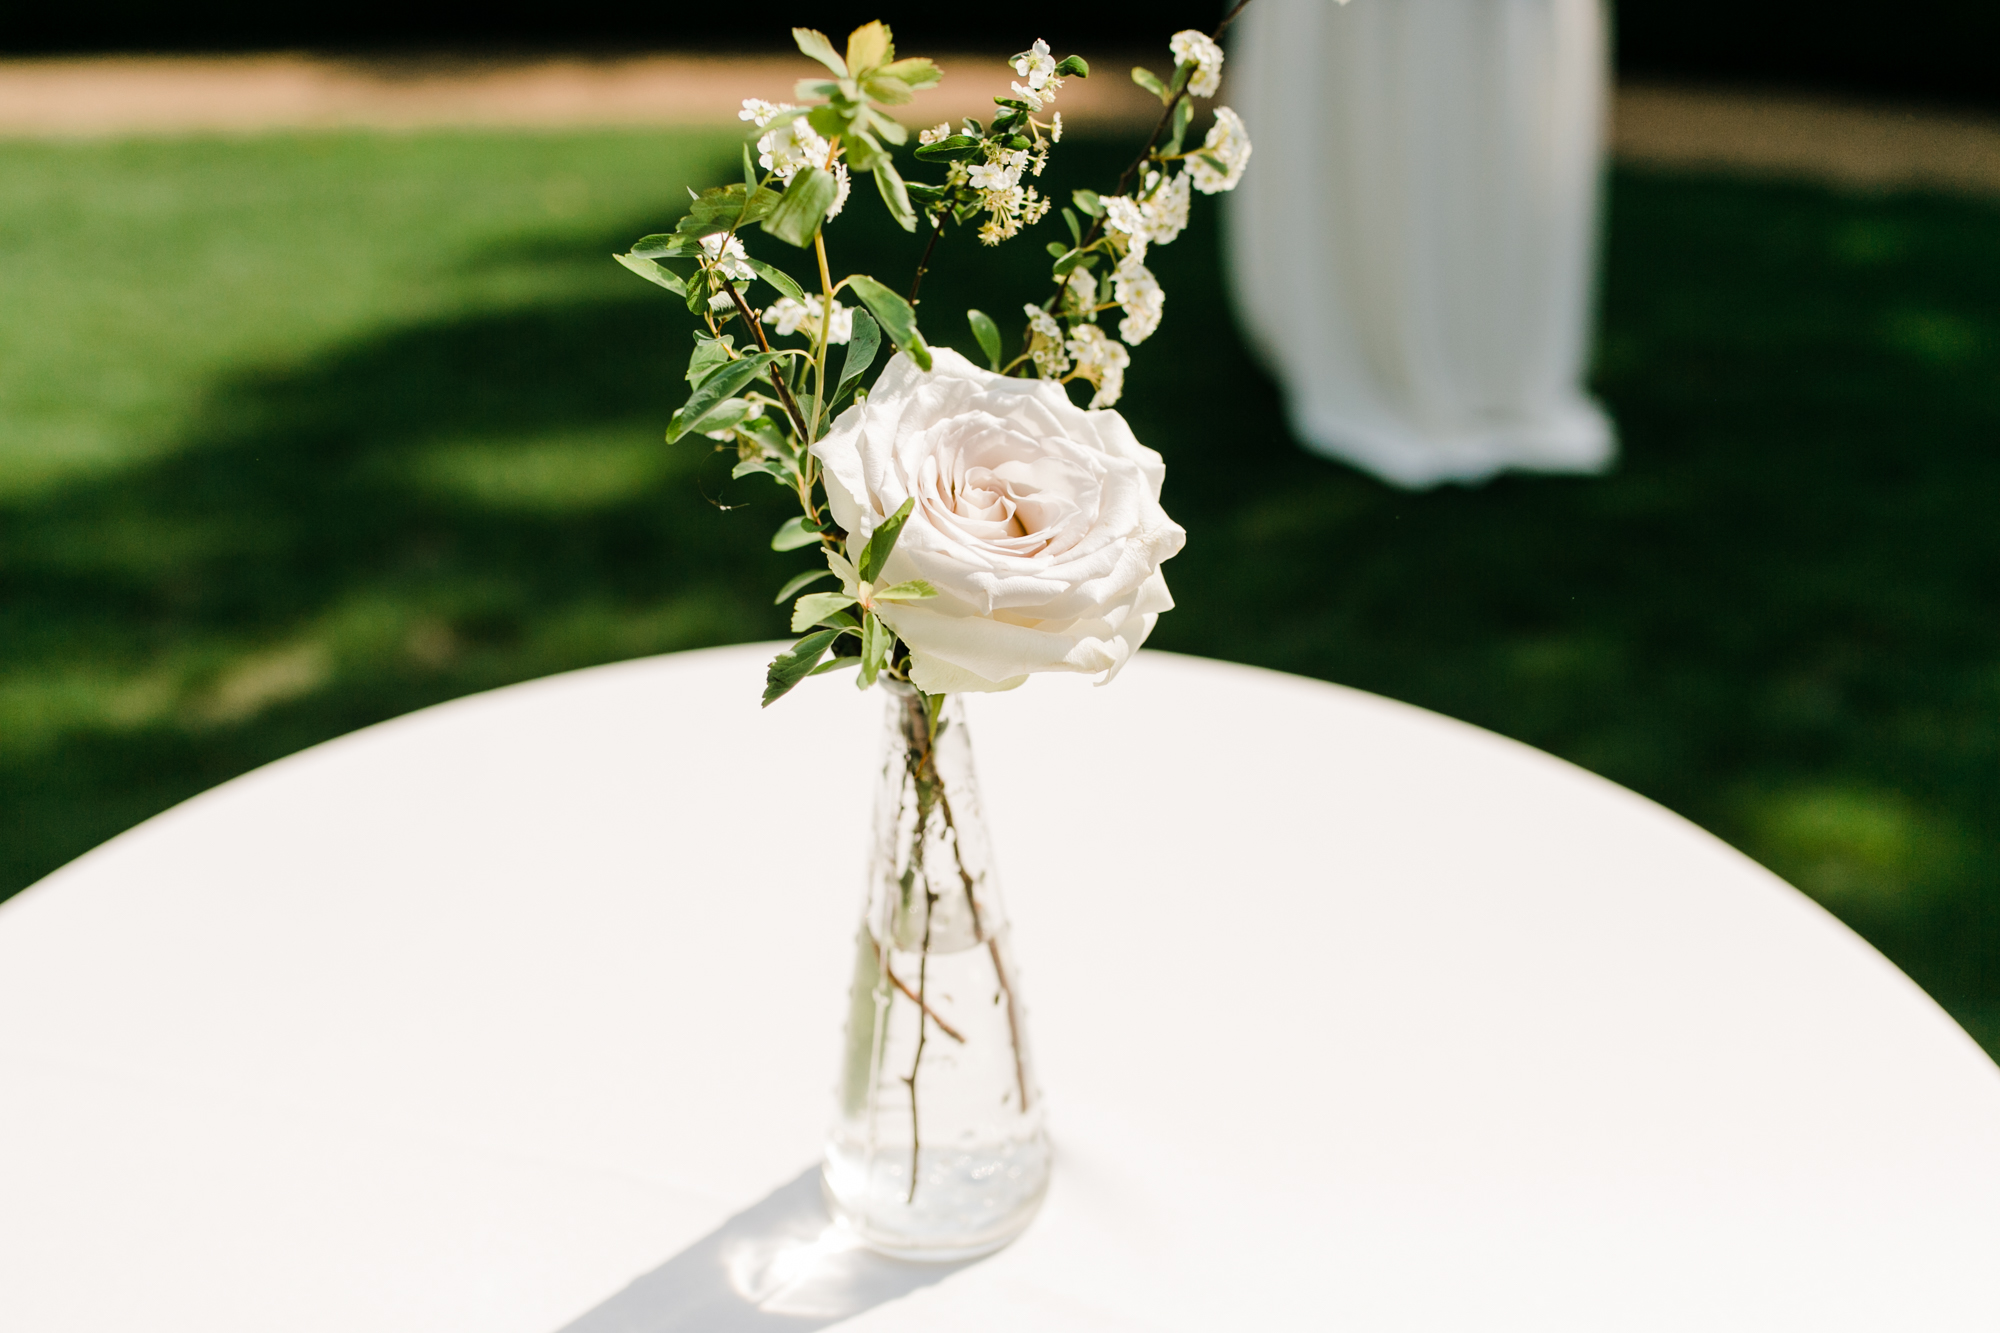 Simple bud vases for cocktail hour // Nashville Wedding Floral Design